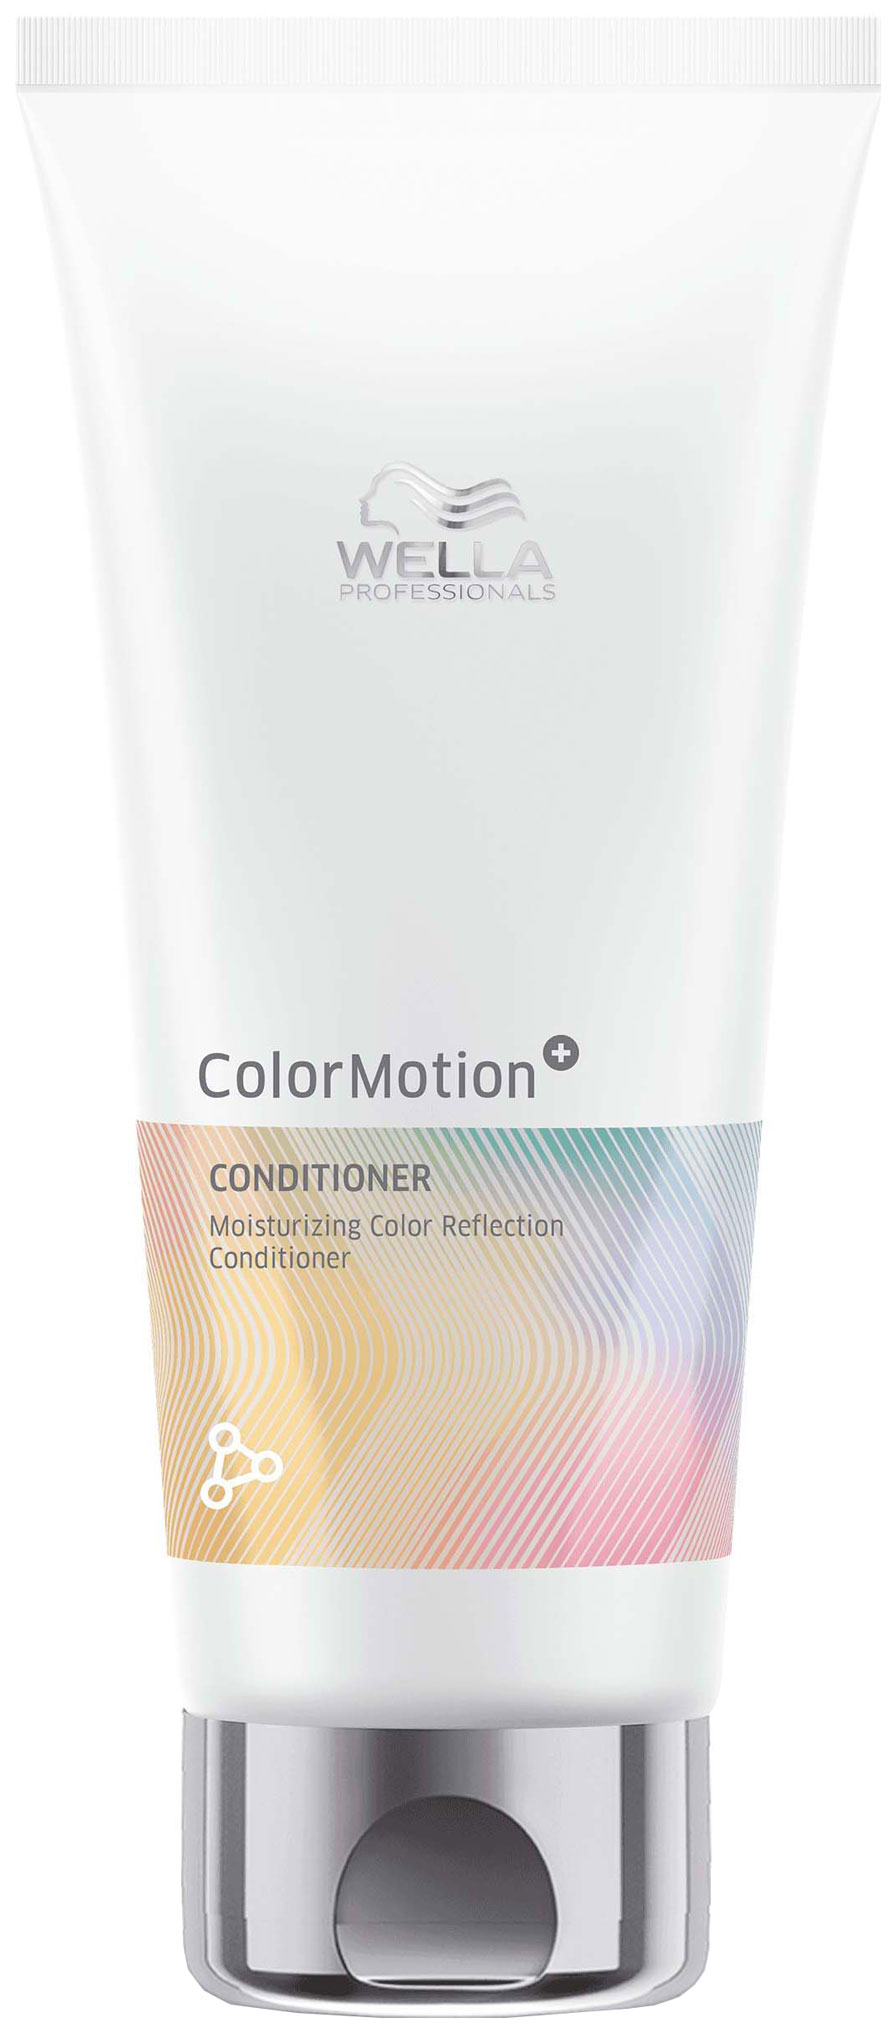 Бальзам Wella Professionals Motion Moisturizing Color Reflection для окрашенных волос wella professionals бальзам увлажняющий для сияния цвета окрашенных волос color motion 200 мл